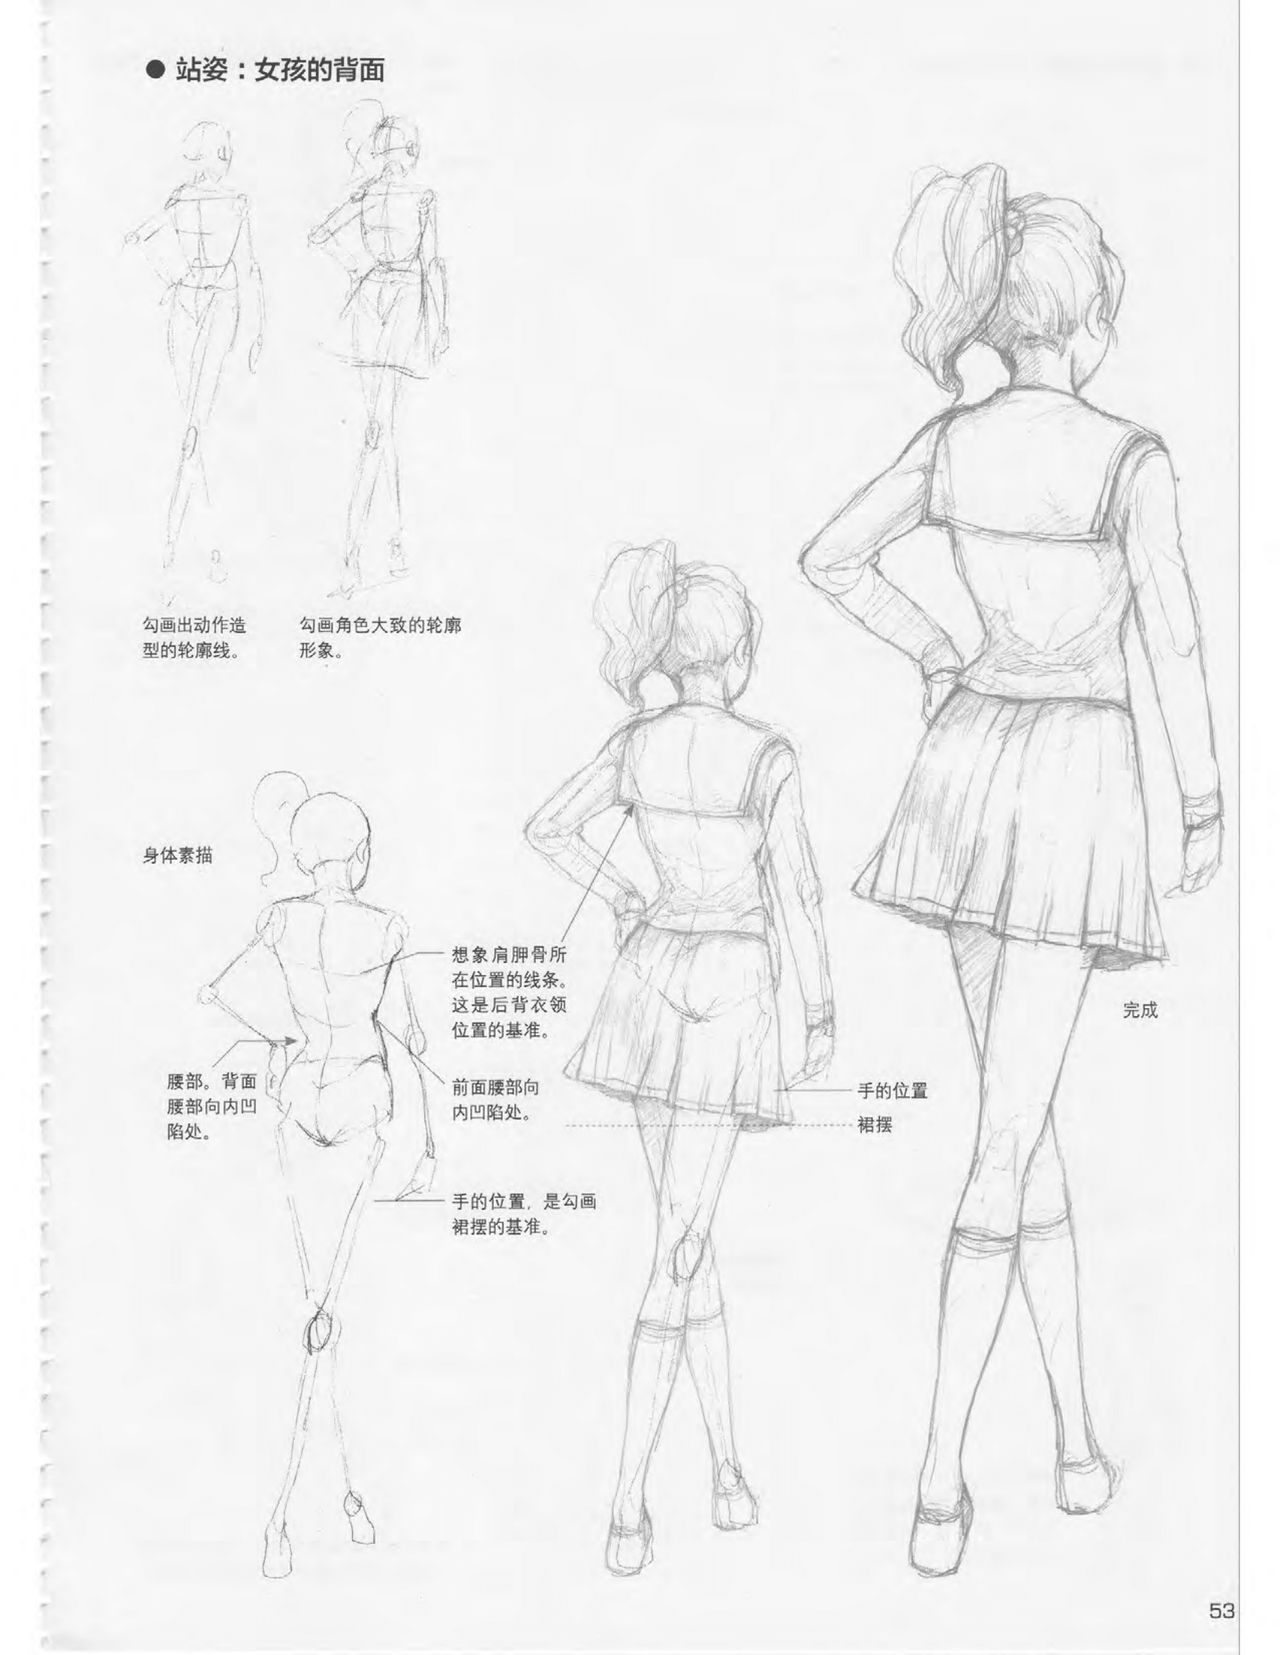 Japanese Manga Master Lecture 3: Lin Akira and Kakumaru Maru Talk About Glamorous Character Modeling 53